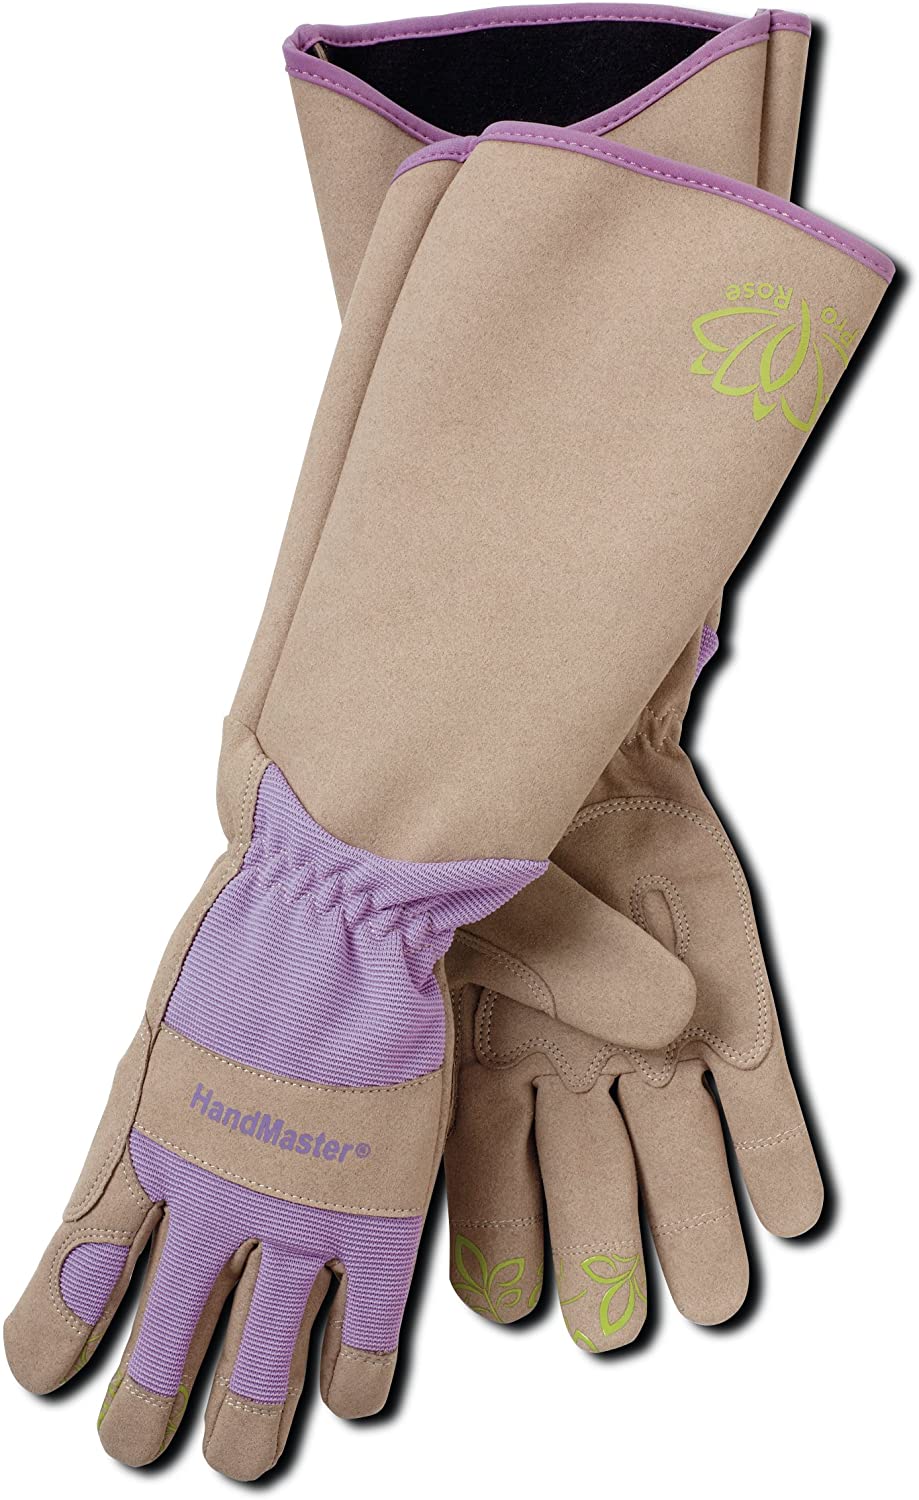 Magid Glove & Safety Spandex Elbow-Length Gardening Glove